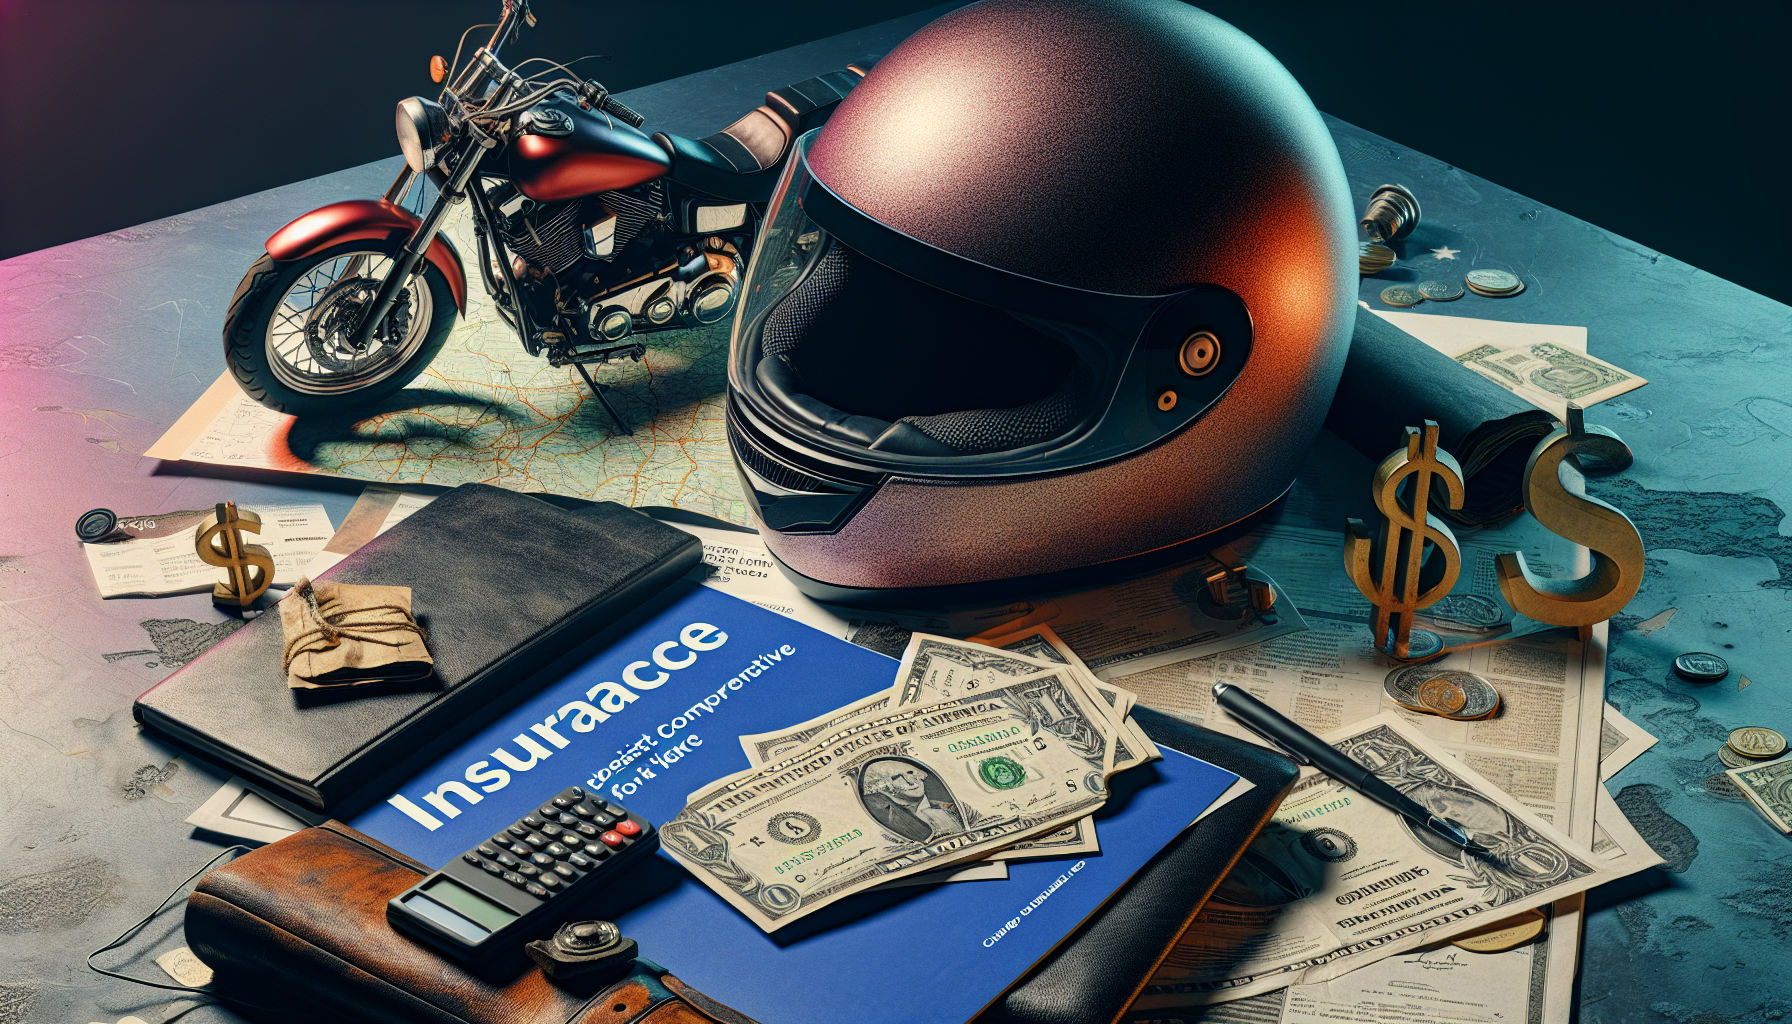 découvrez les meilleures assurances tous risques pour les motards à 97420 avec notre comparateur d'assurance moto. trouvez l'assurance moto idéale pour vous et votre moto.